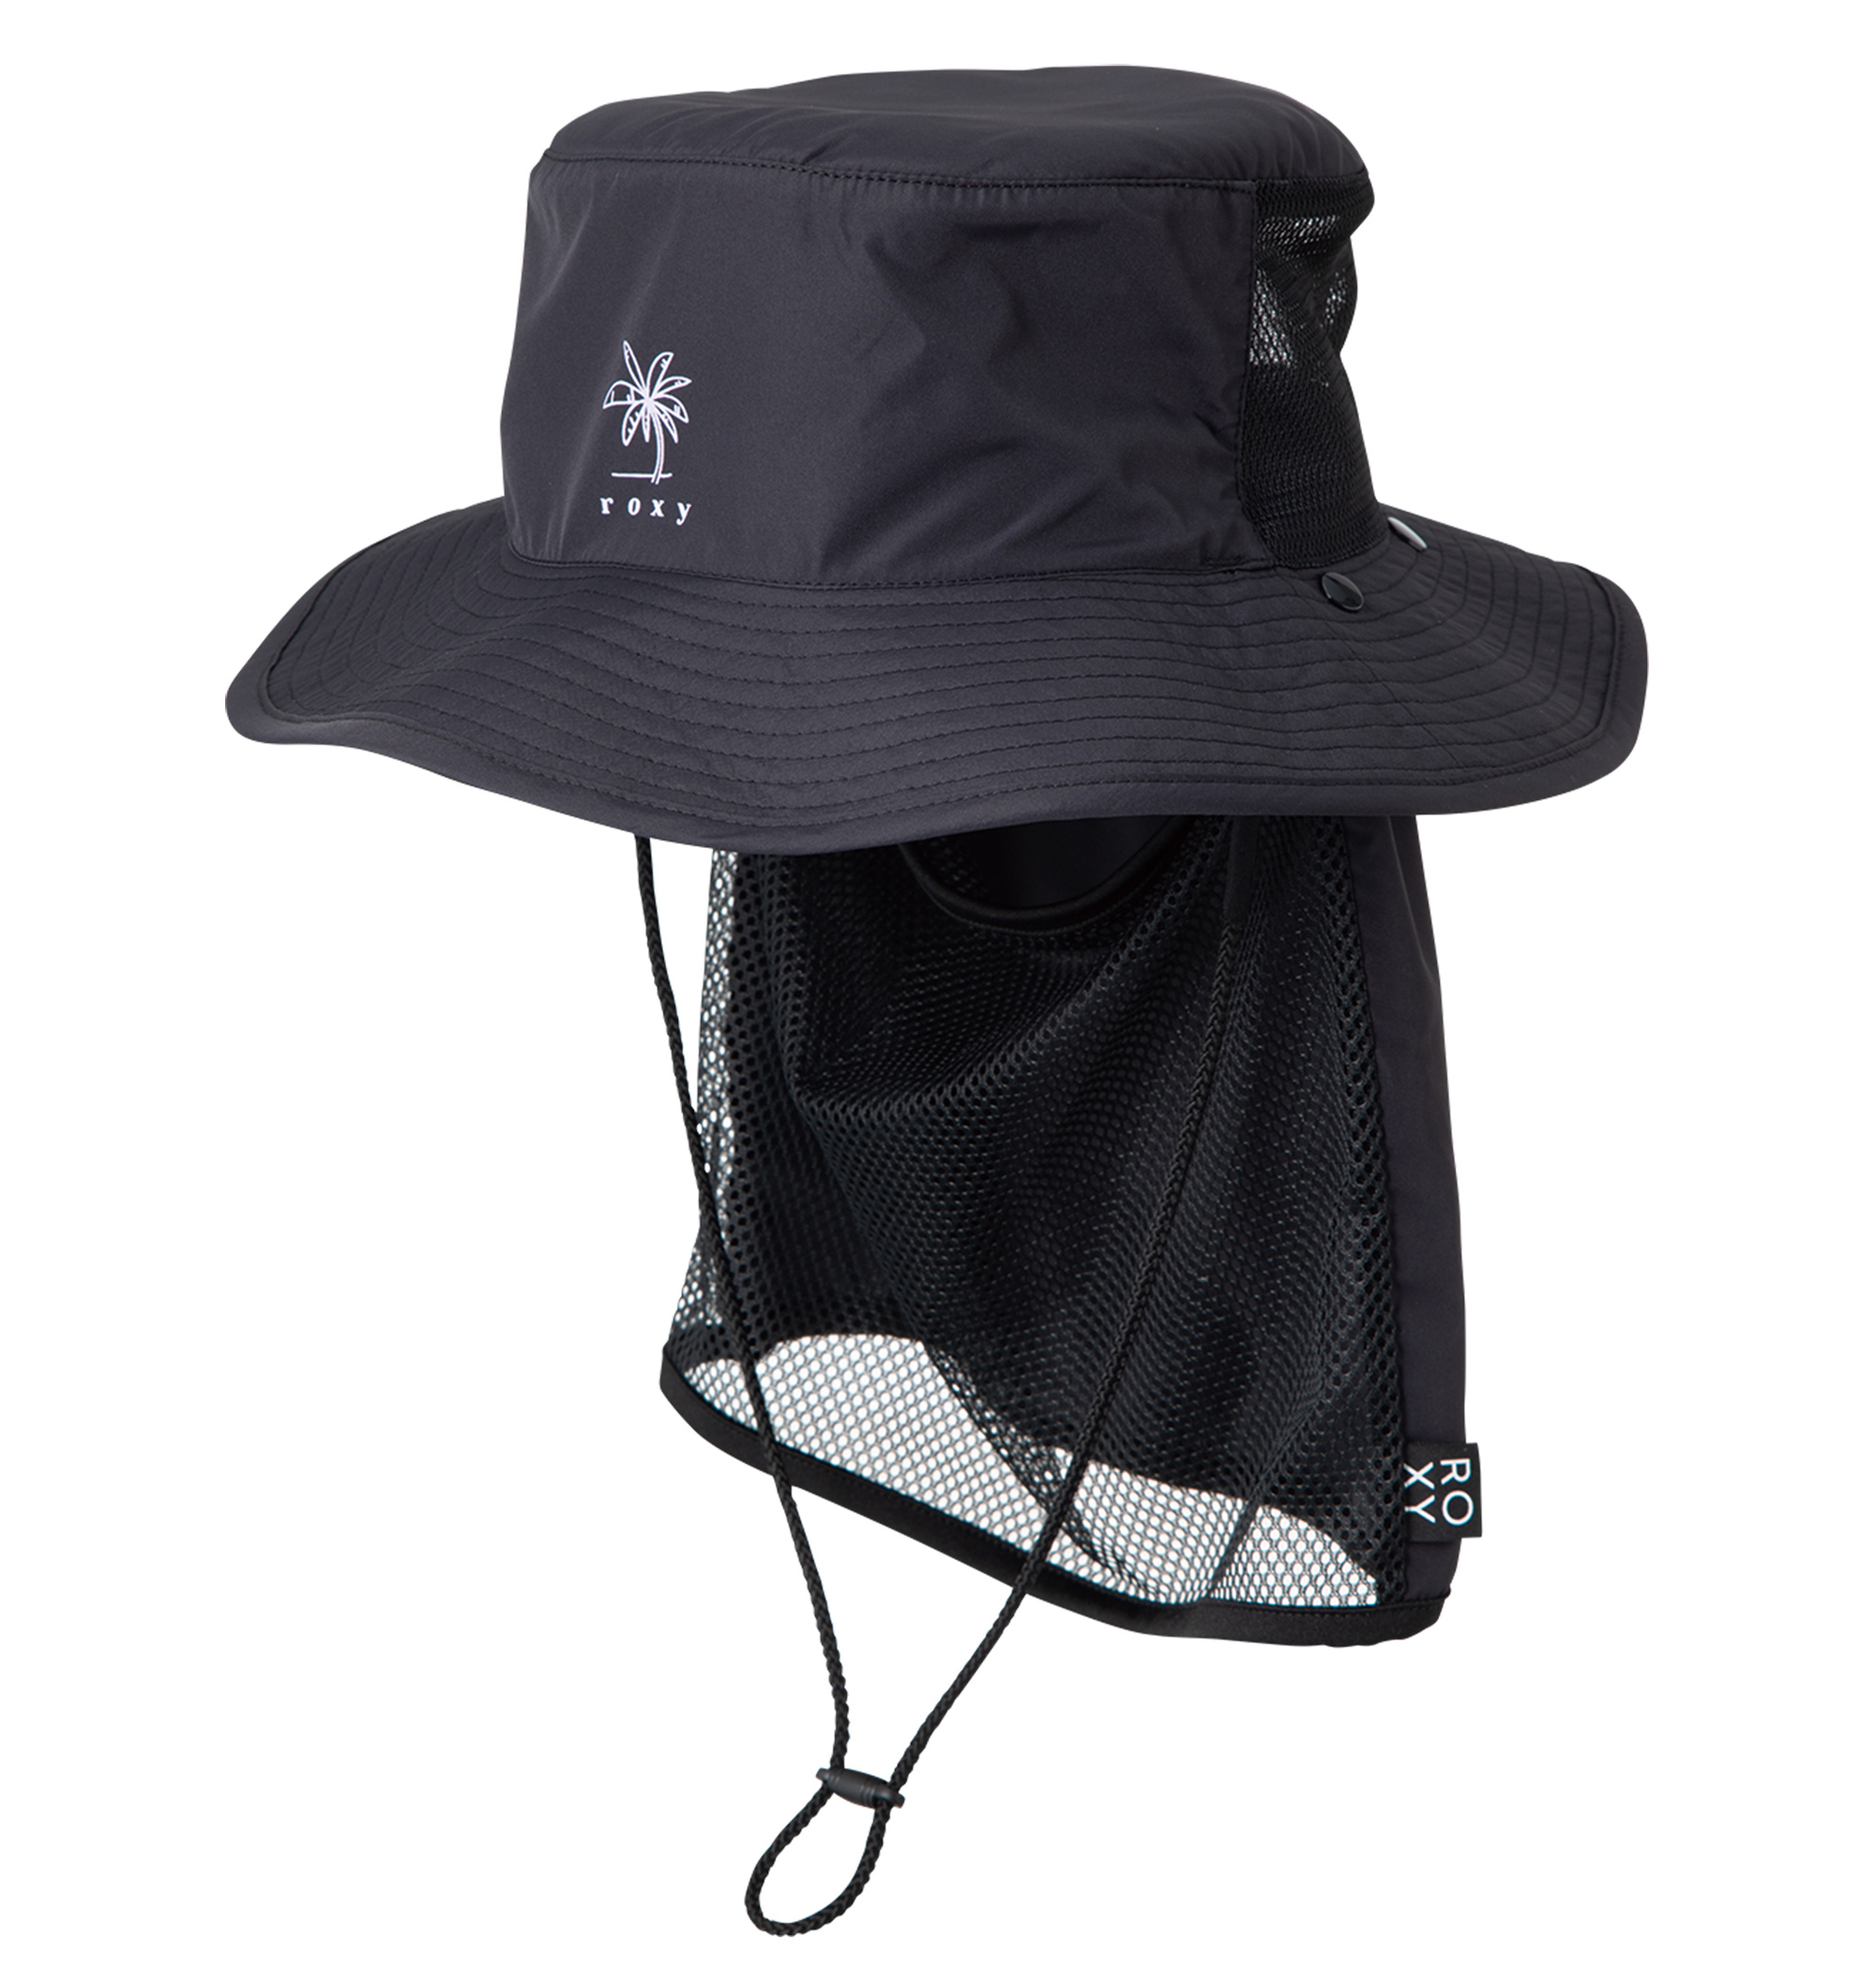 UV SUP CAMP HAT ポリエステル100% UV CUT 撥水加工素材の日焼け防止ハット画像